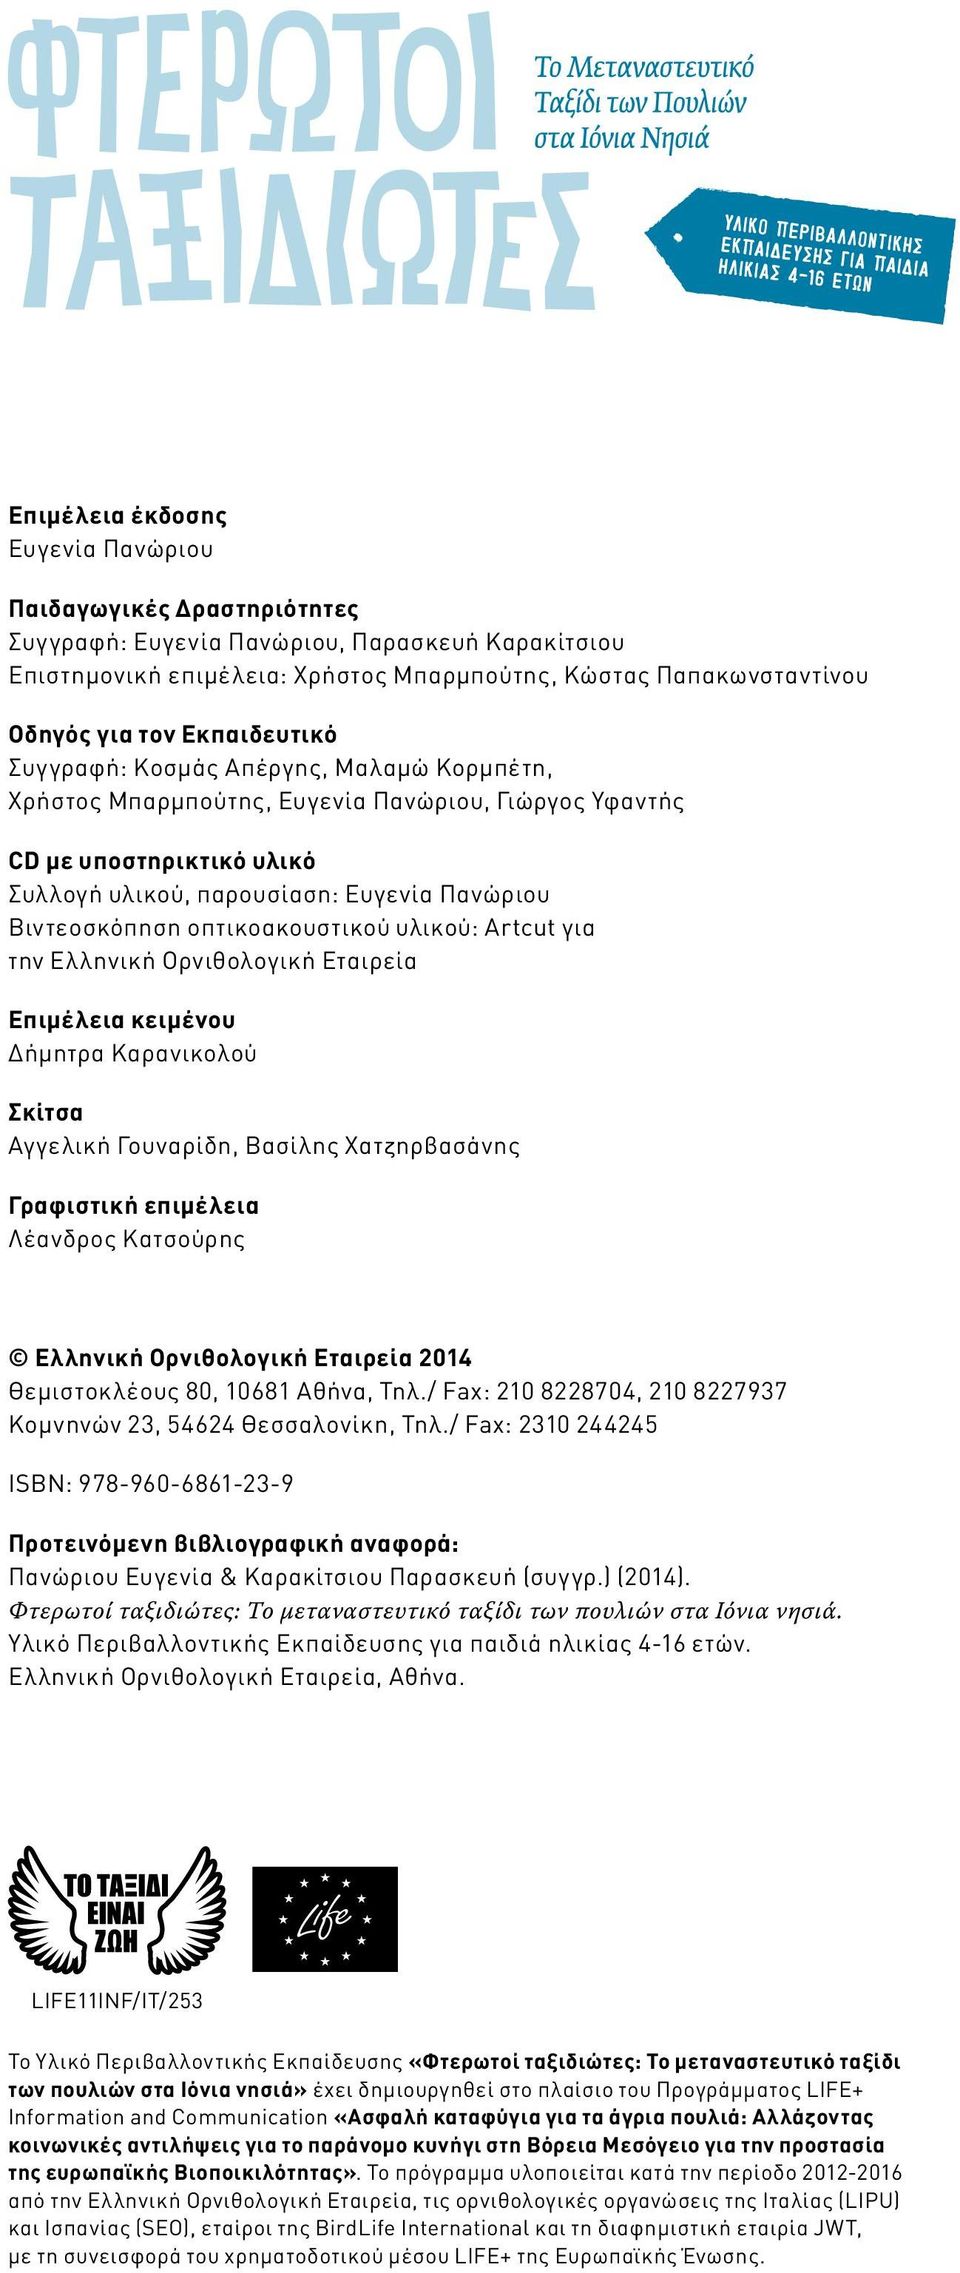 οπτικοακουστικού υλικού: Artcut για την Ελληνική Ορνιθολογική Εταιρεία Επιμέλεια κειμένου Δήμητρα Καρανικολού Σκίτσα Αγγελική Γουναρίδη, Βασίλης Χατζηρβασάνης Γραφιστική επιμέλεια Λέανδρος Κατσούρης